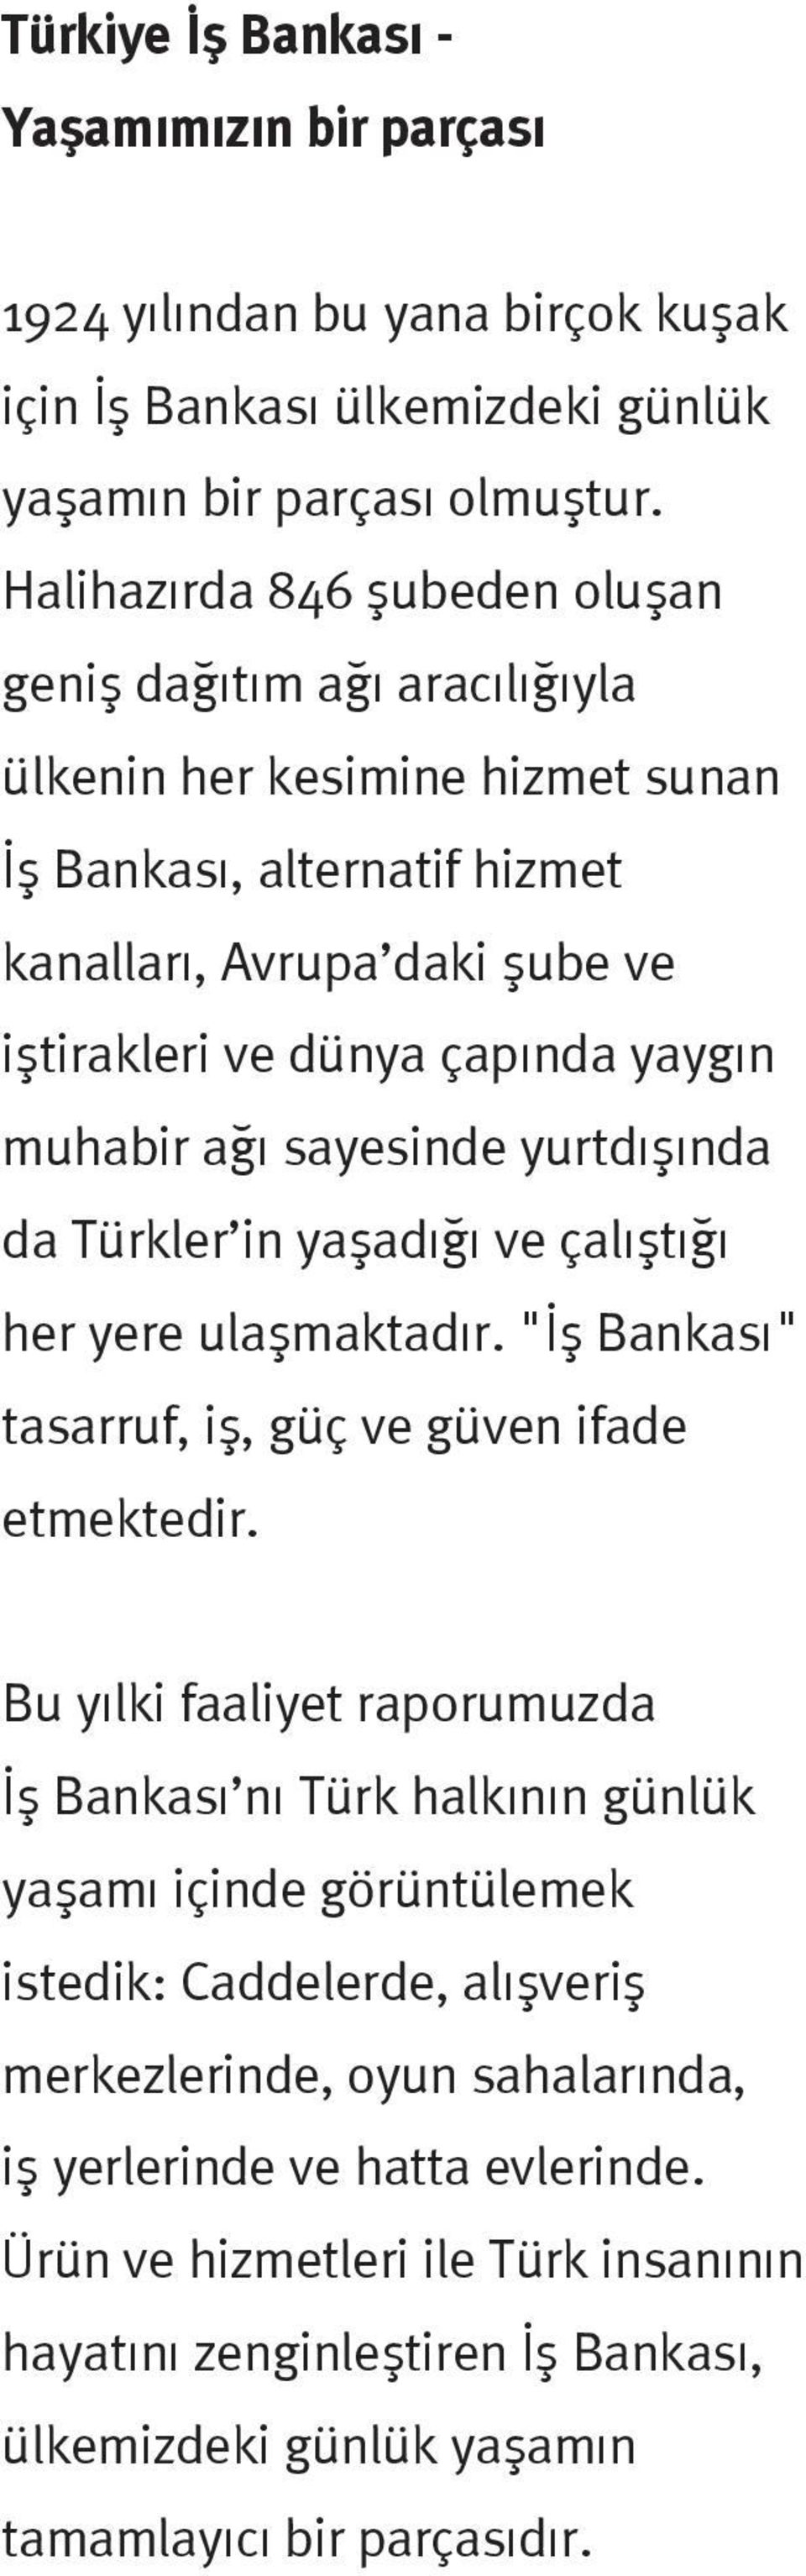 a sayesinde yurtd fl nda da Türkler in yaflad ve çal flt her yere ulaflmaktad r. " fl Bankas " tasarruf, ifl, güç ve güven ifade etmektedir.